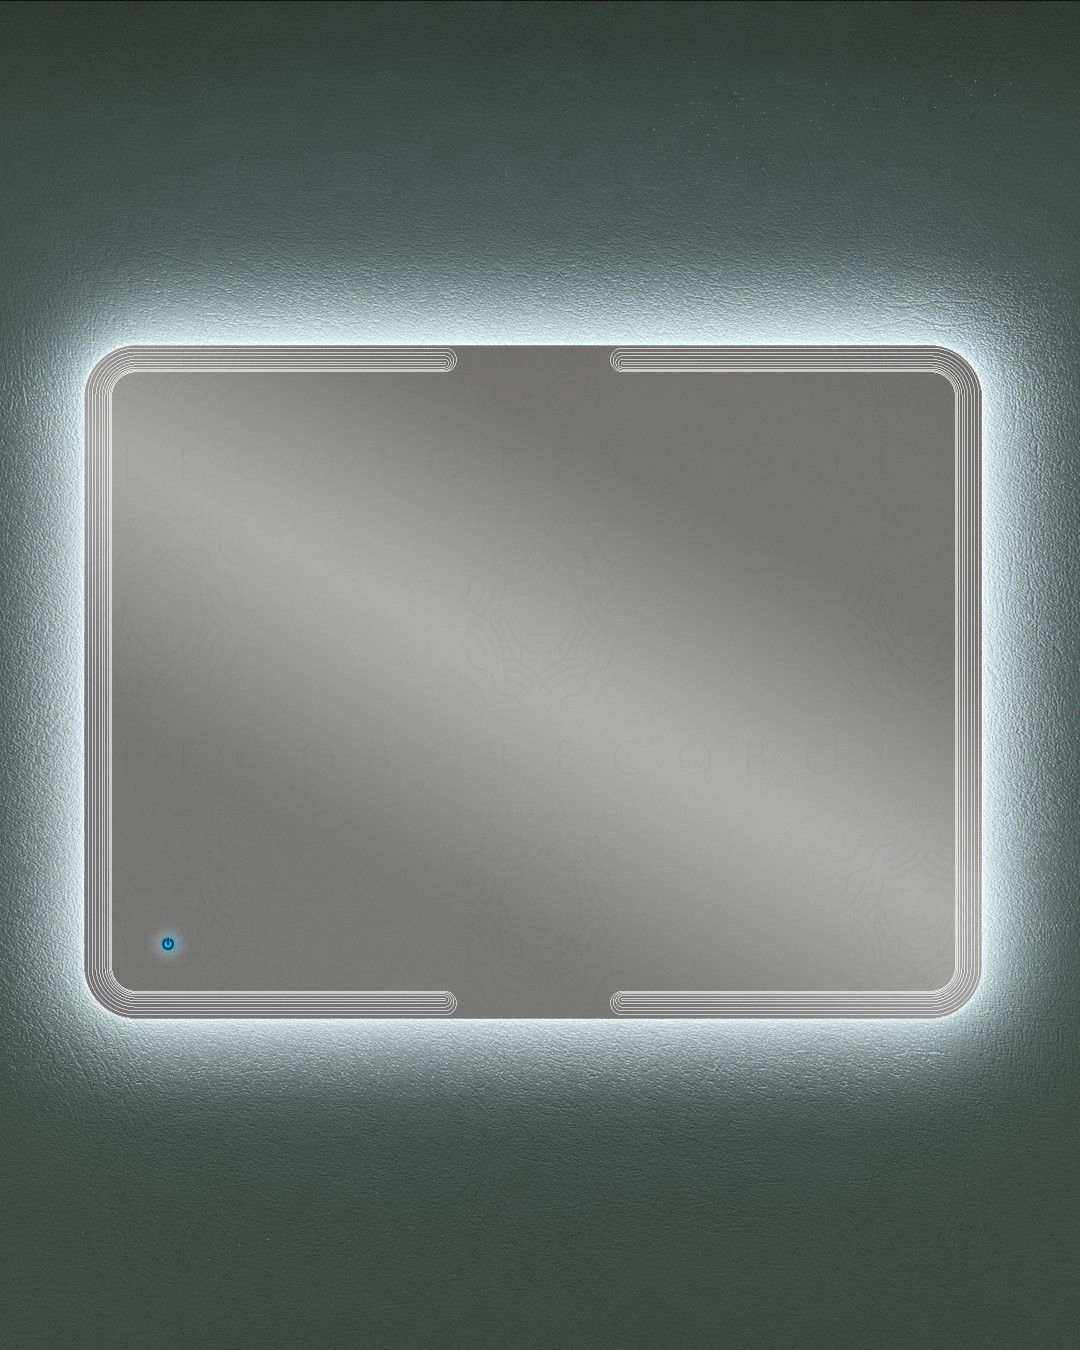 Specchio led con sensore touch, cm.120x90